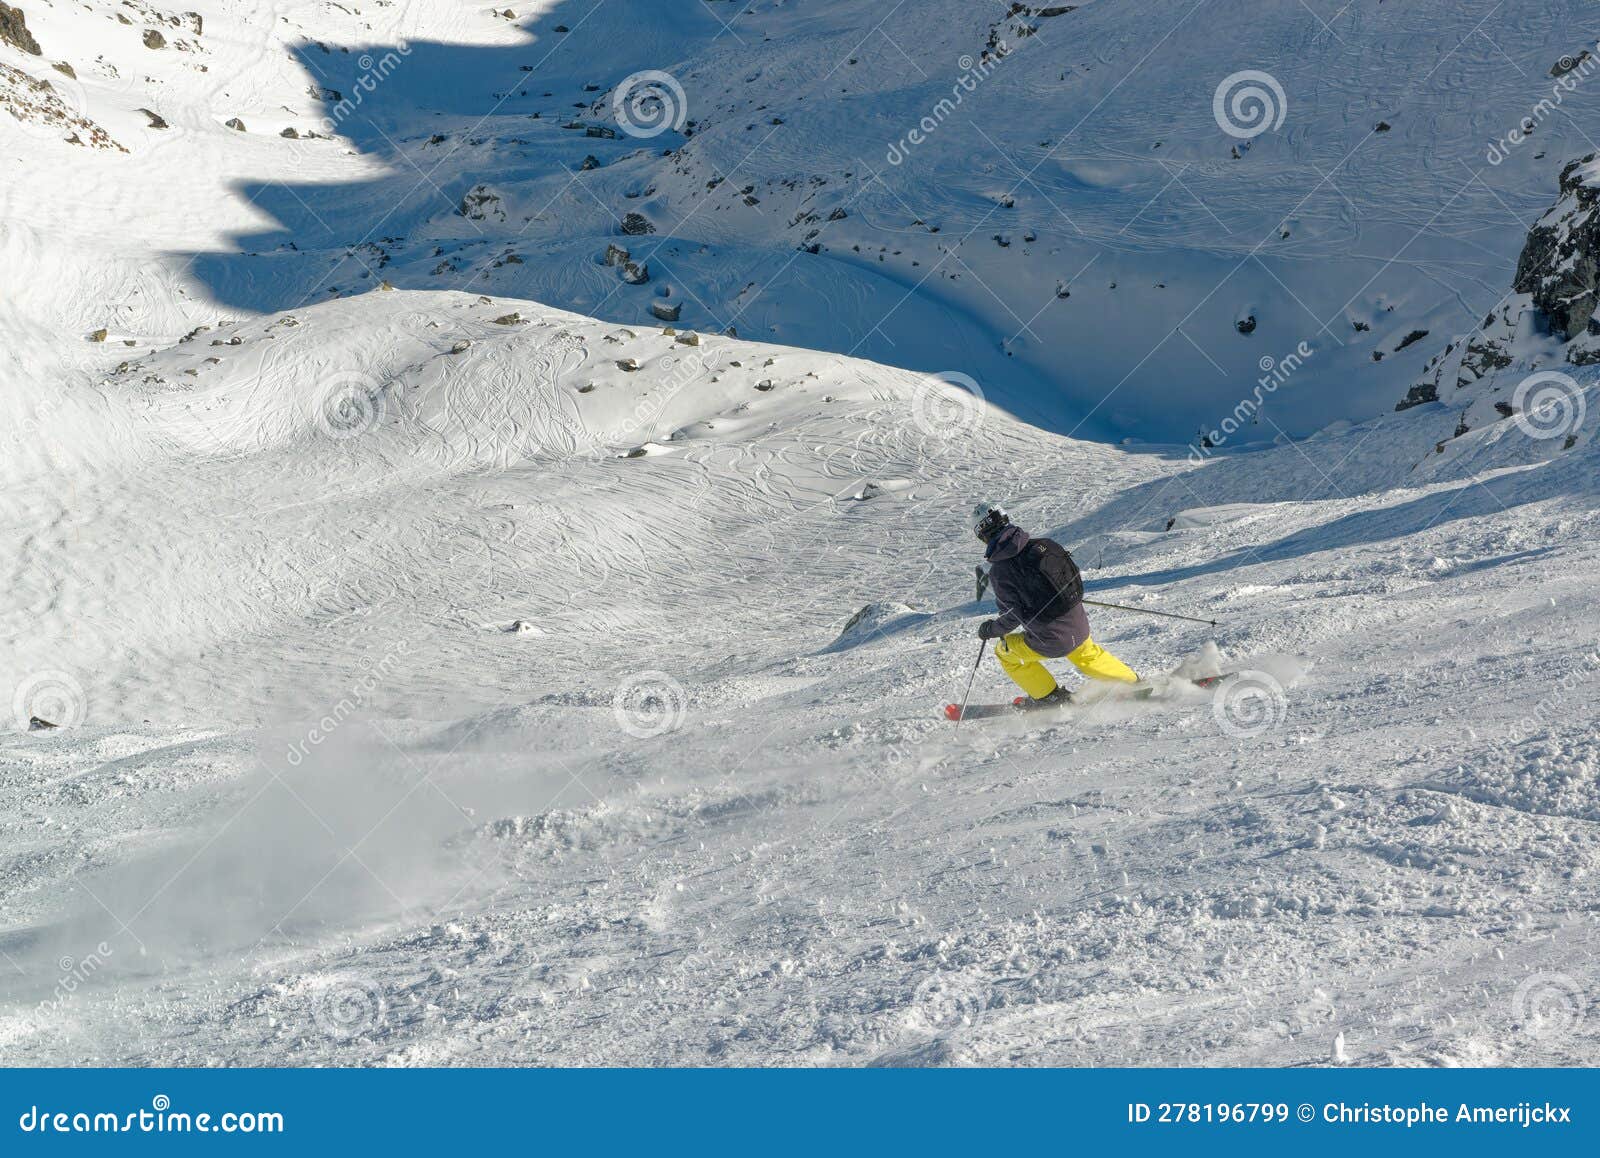 Off-piste Skiing in Mont Gele, Verbier, Switzerland Stock Image - Image ...